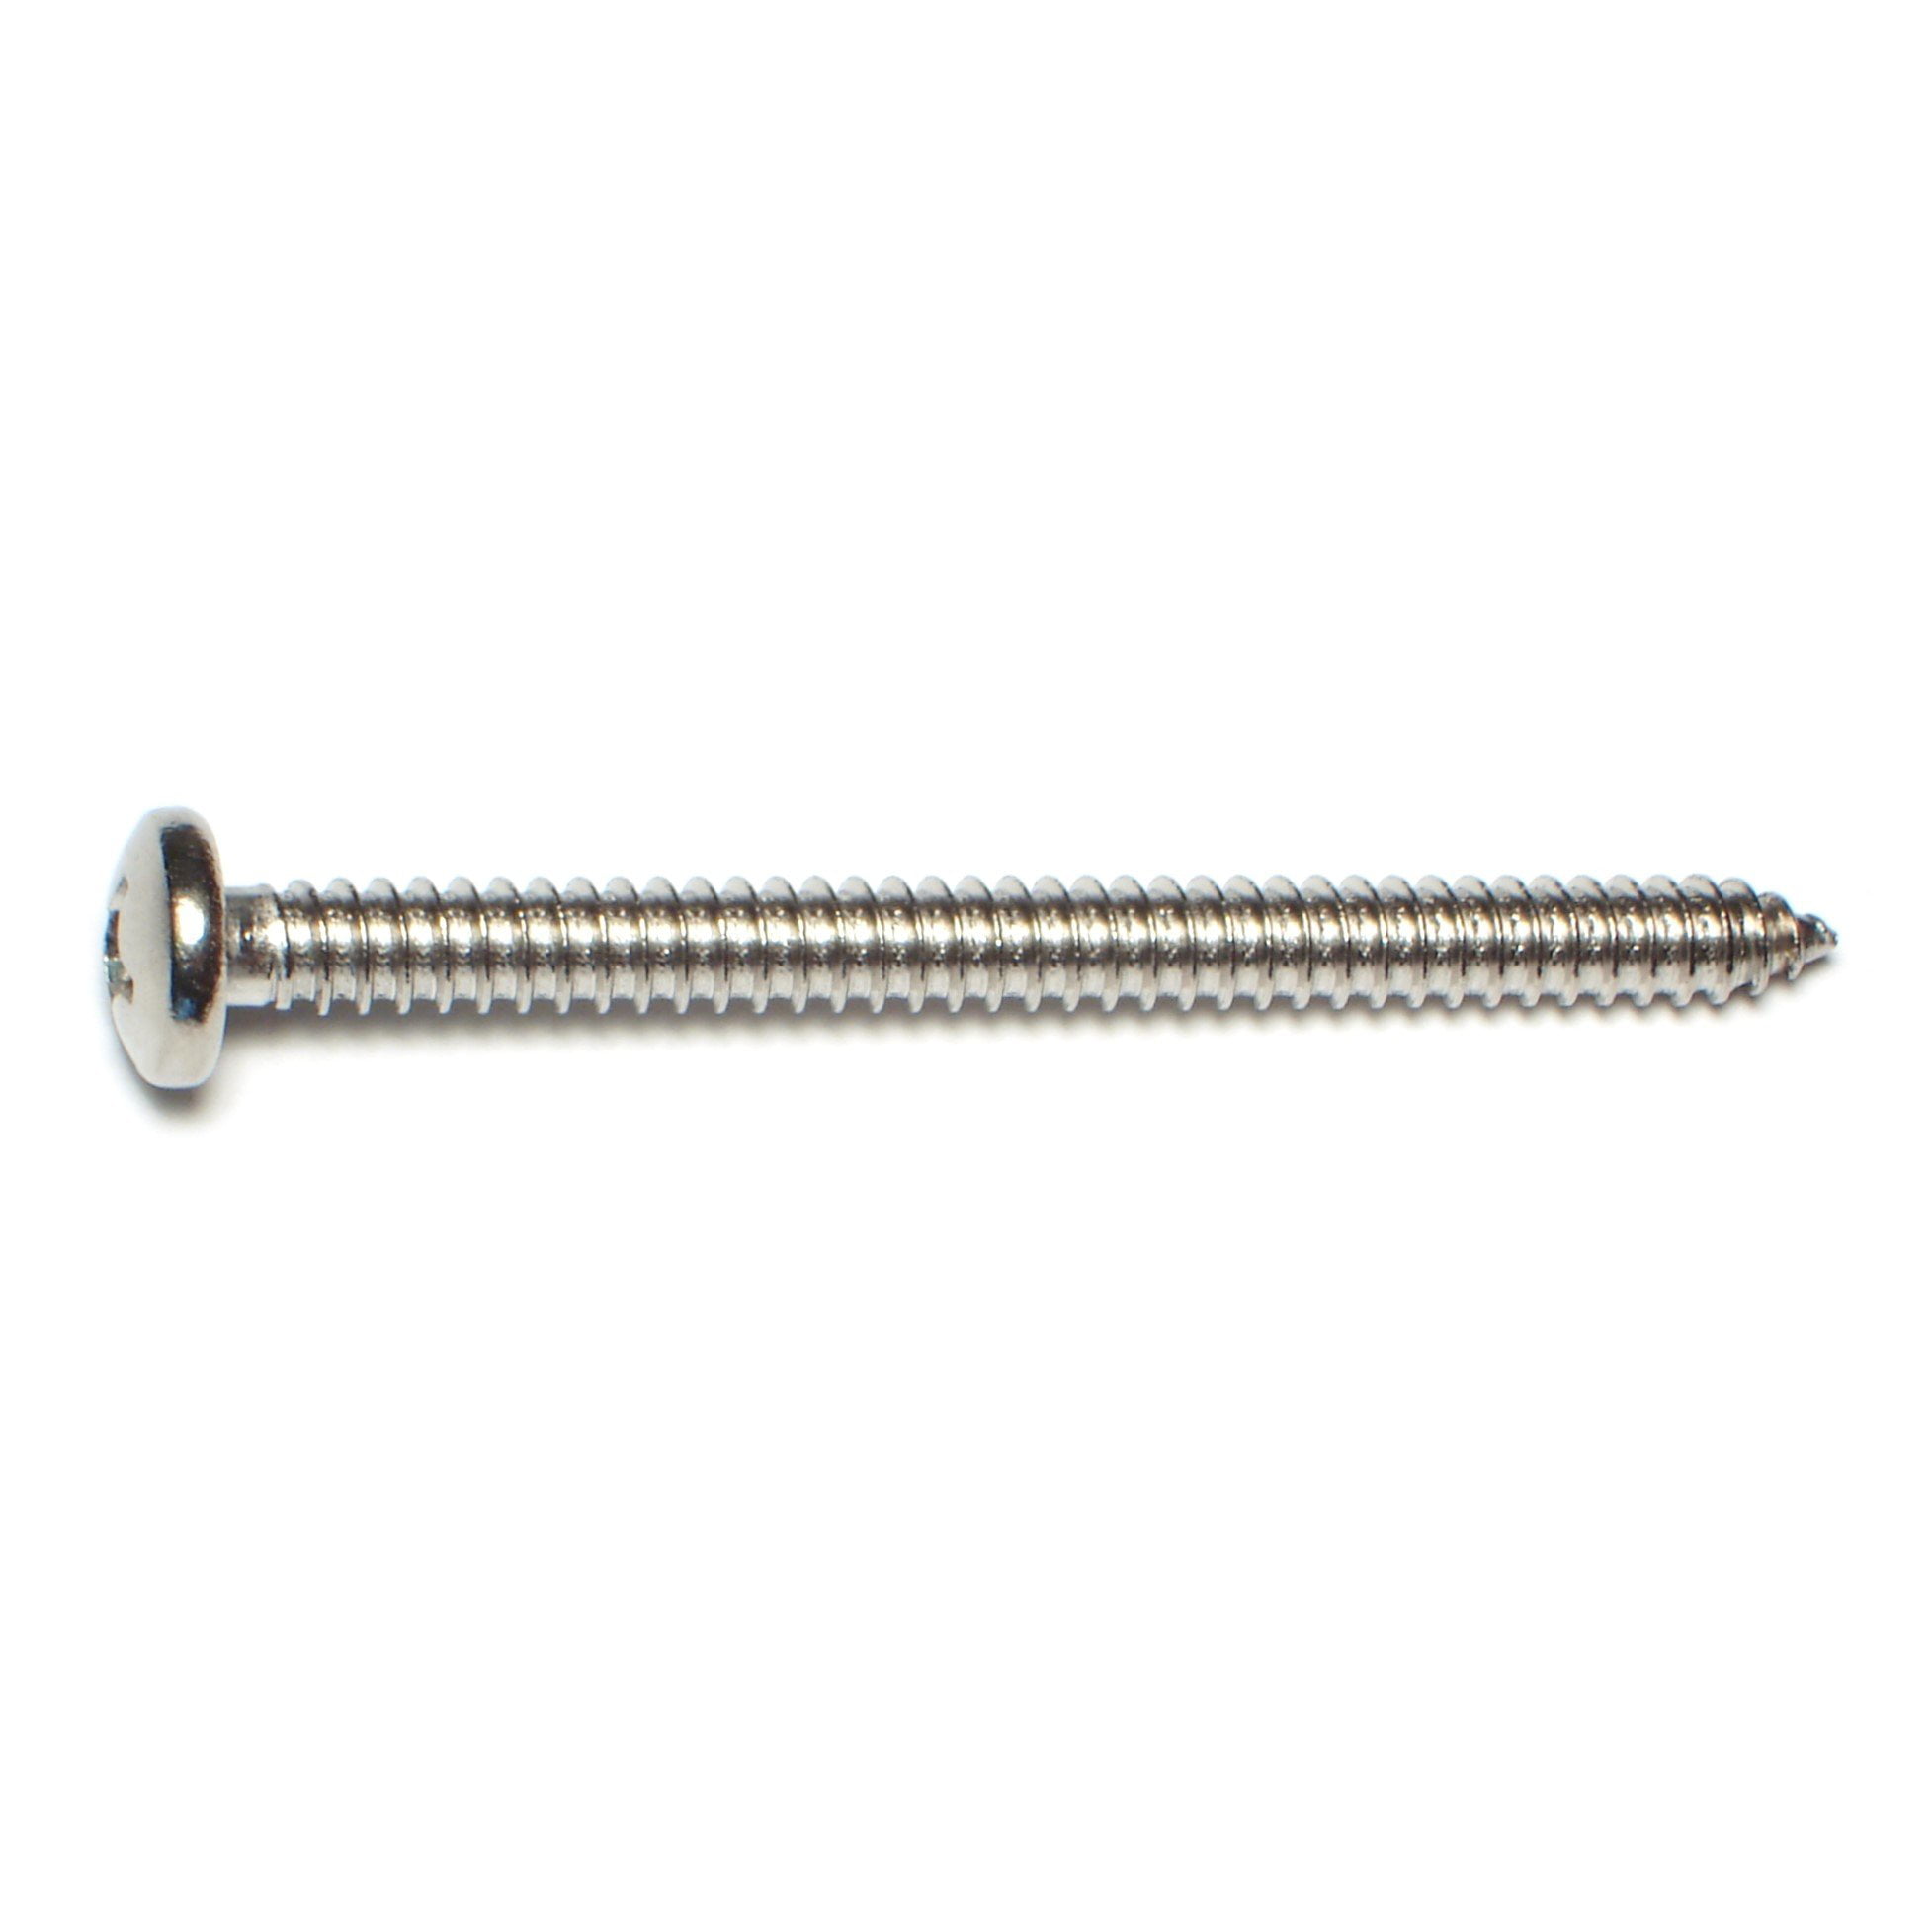 18-8 Stainless Steel Phillips Pan Head #14 Sheet Metal Screws Select Length 